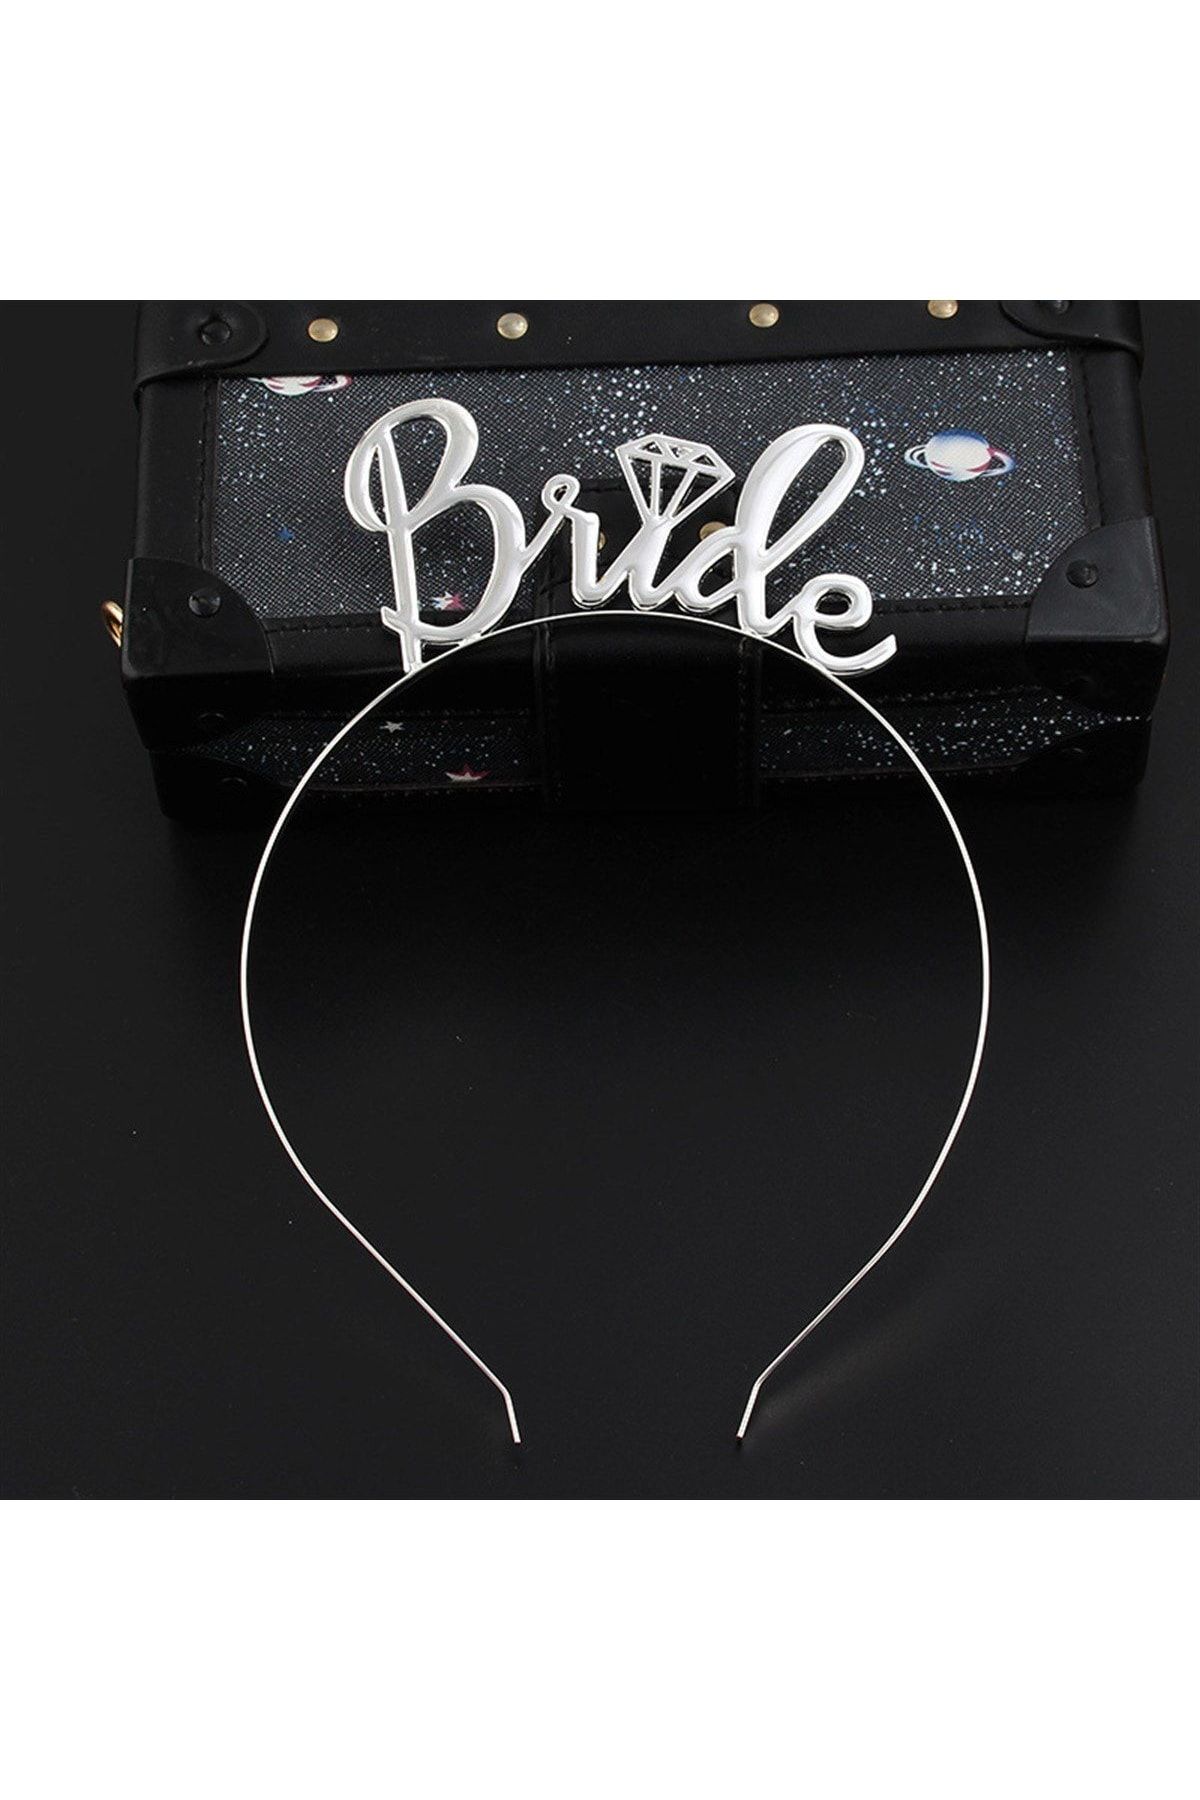 Huzur Party Store Bride Yazılı Metal Taç Gümüş Renkli Gri Renginde Bekarlığa Veda Partisi Konsepti Kaliteli Taç